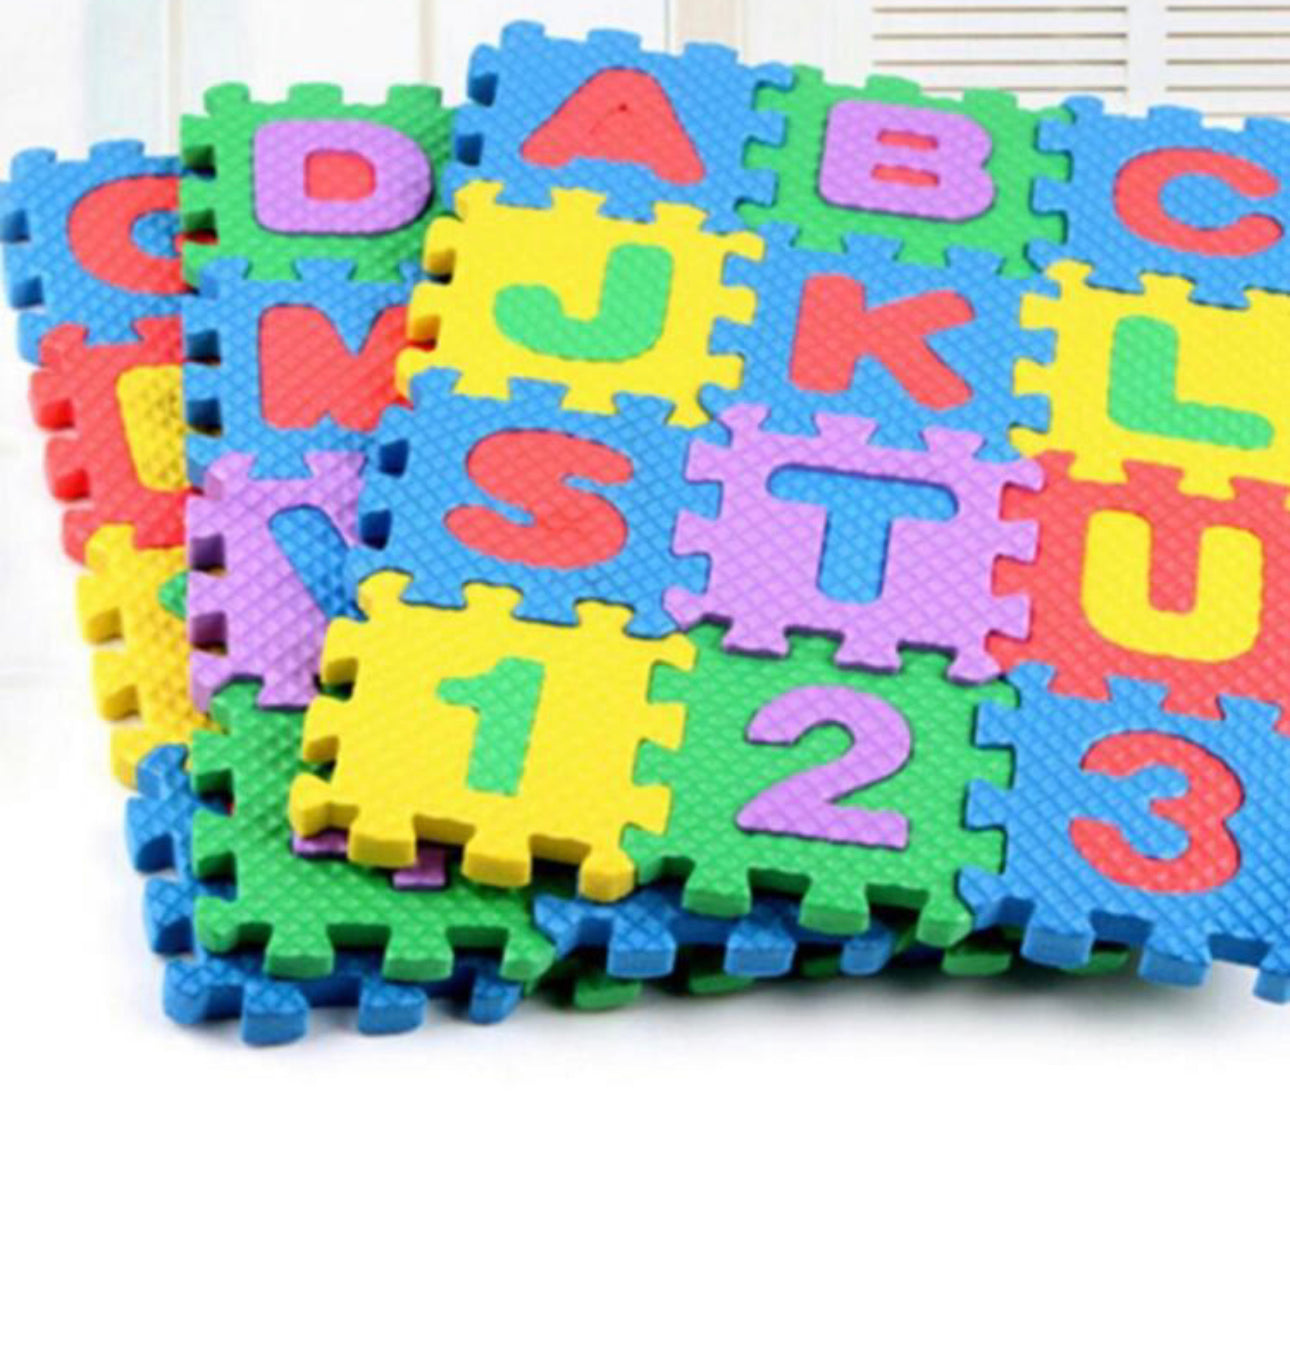 36 piezas de alfombra de piso súper pequeña, rompecabezas con números y letras